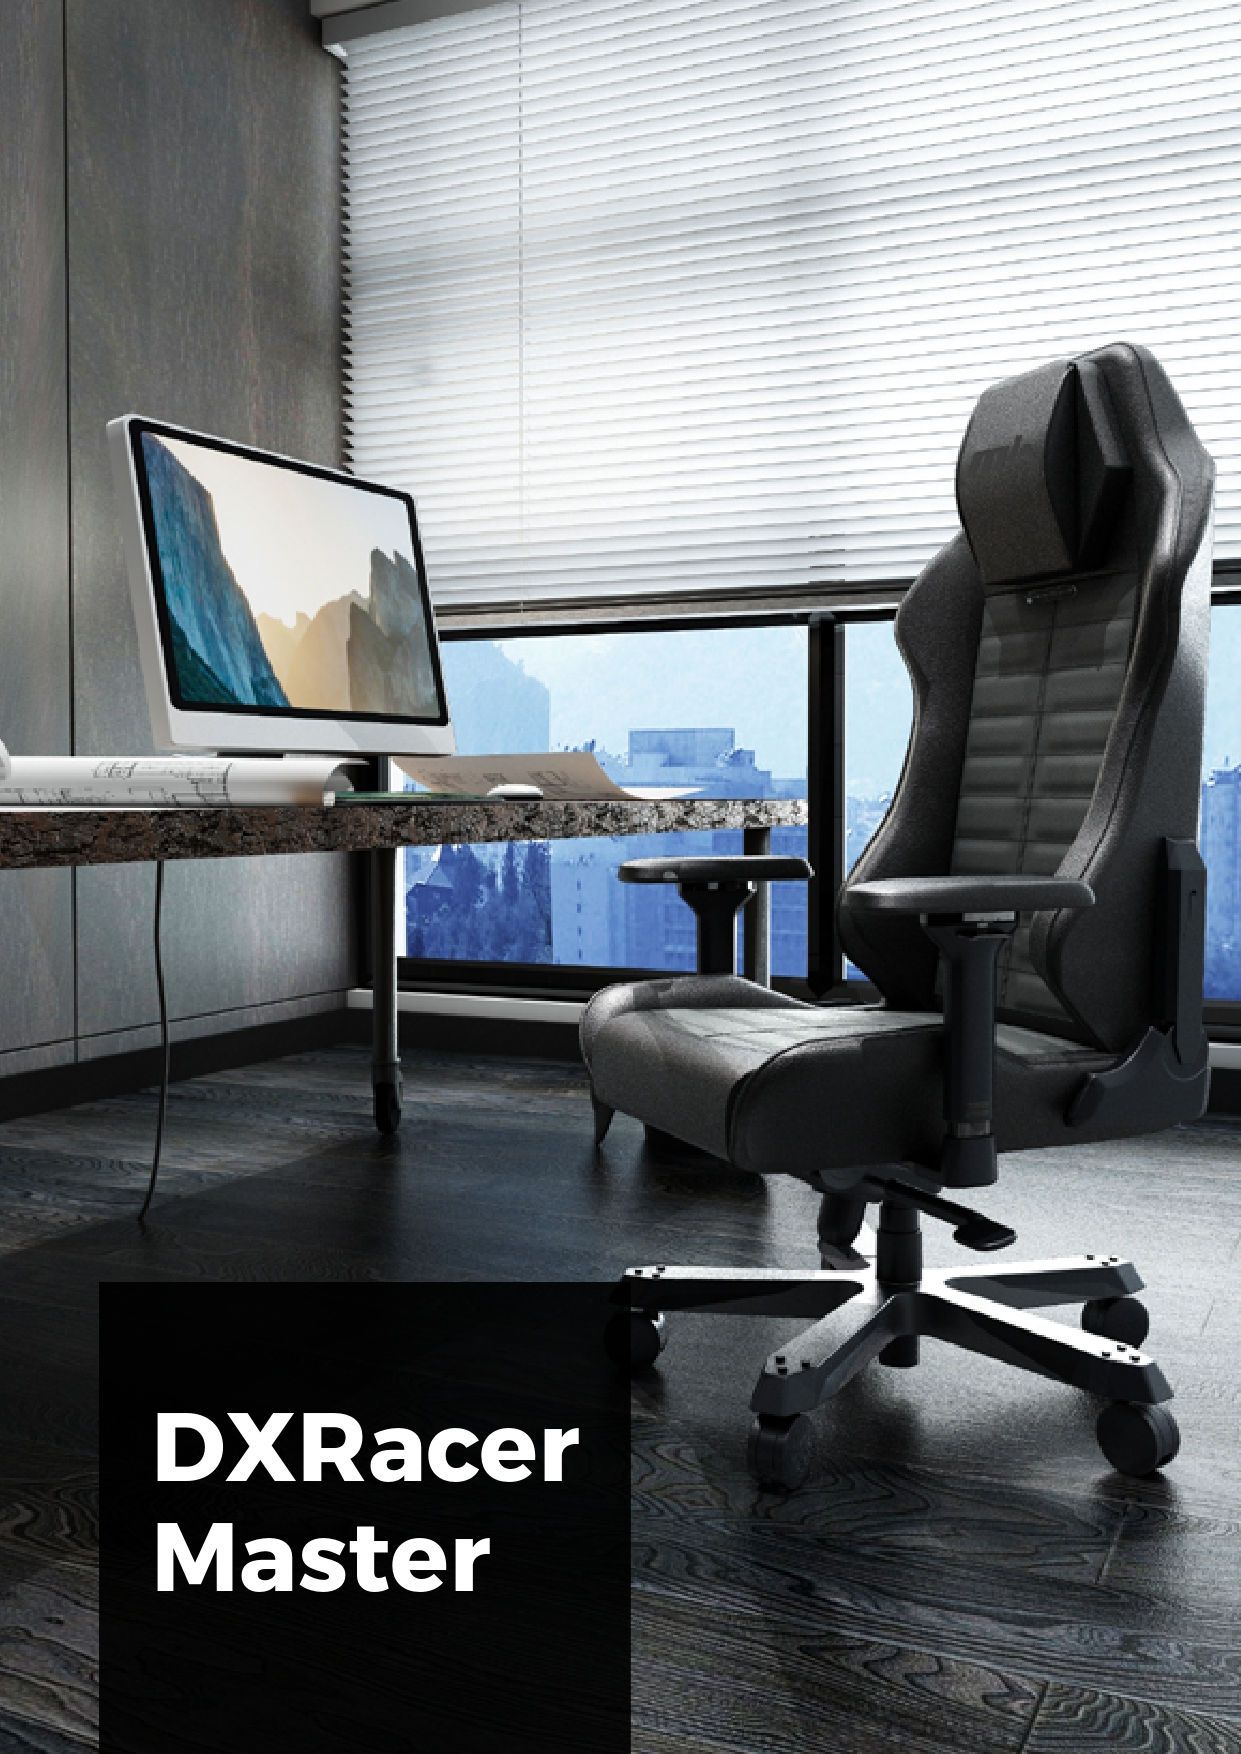 Кресло для геймеров DXRACER MASTER Max DMC-I233S-W-A2 (белое)